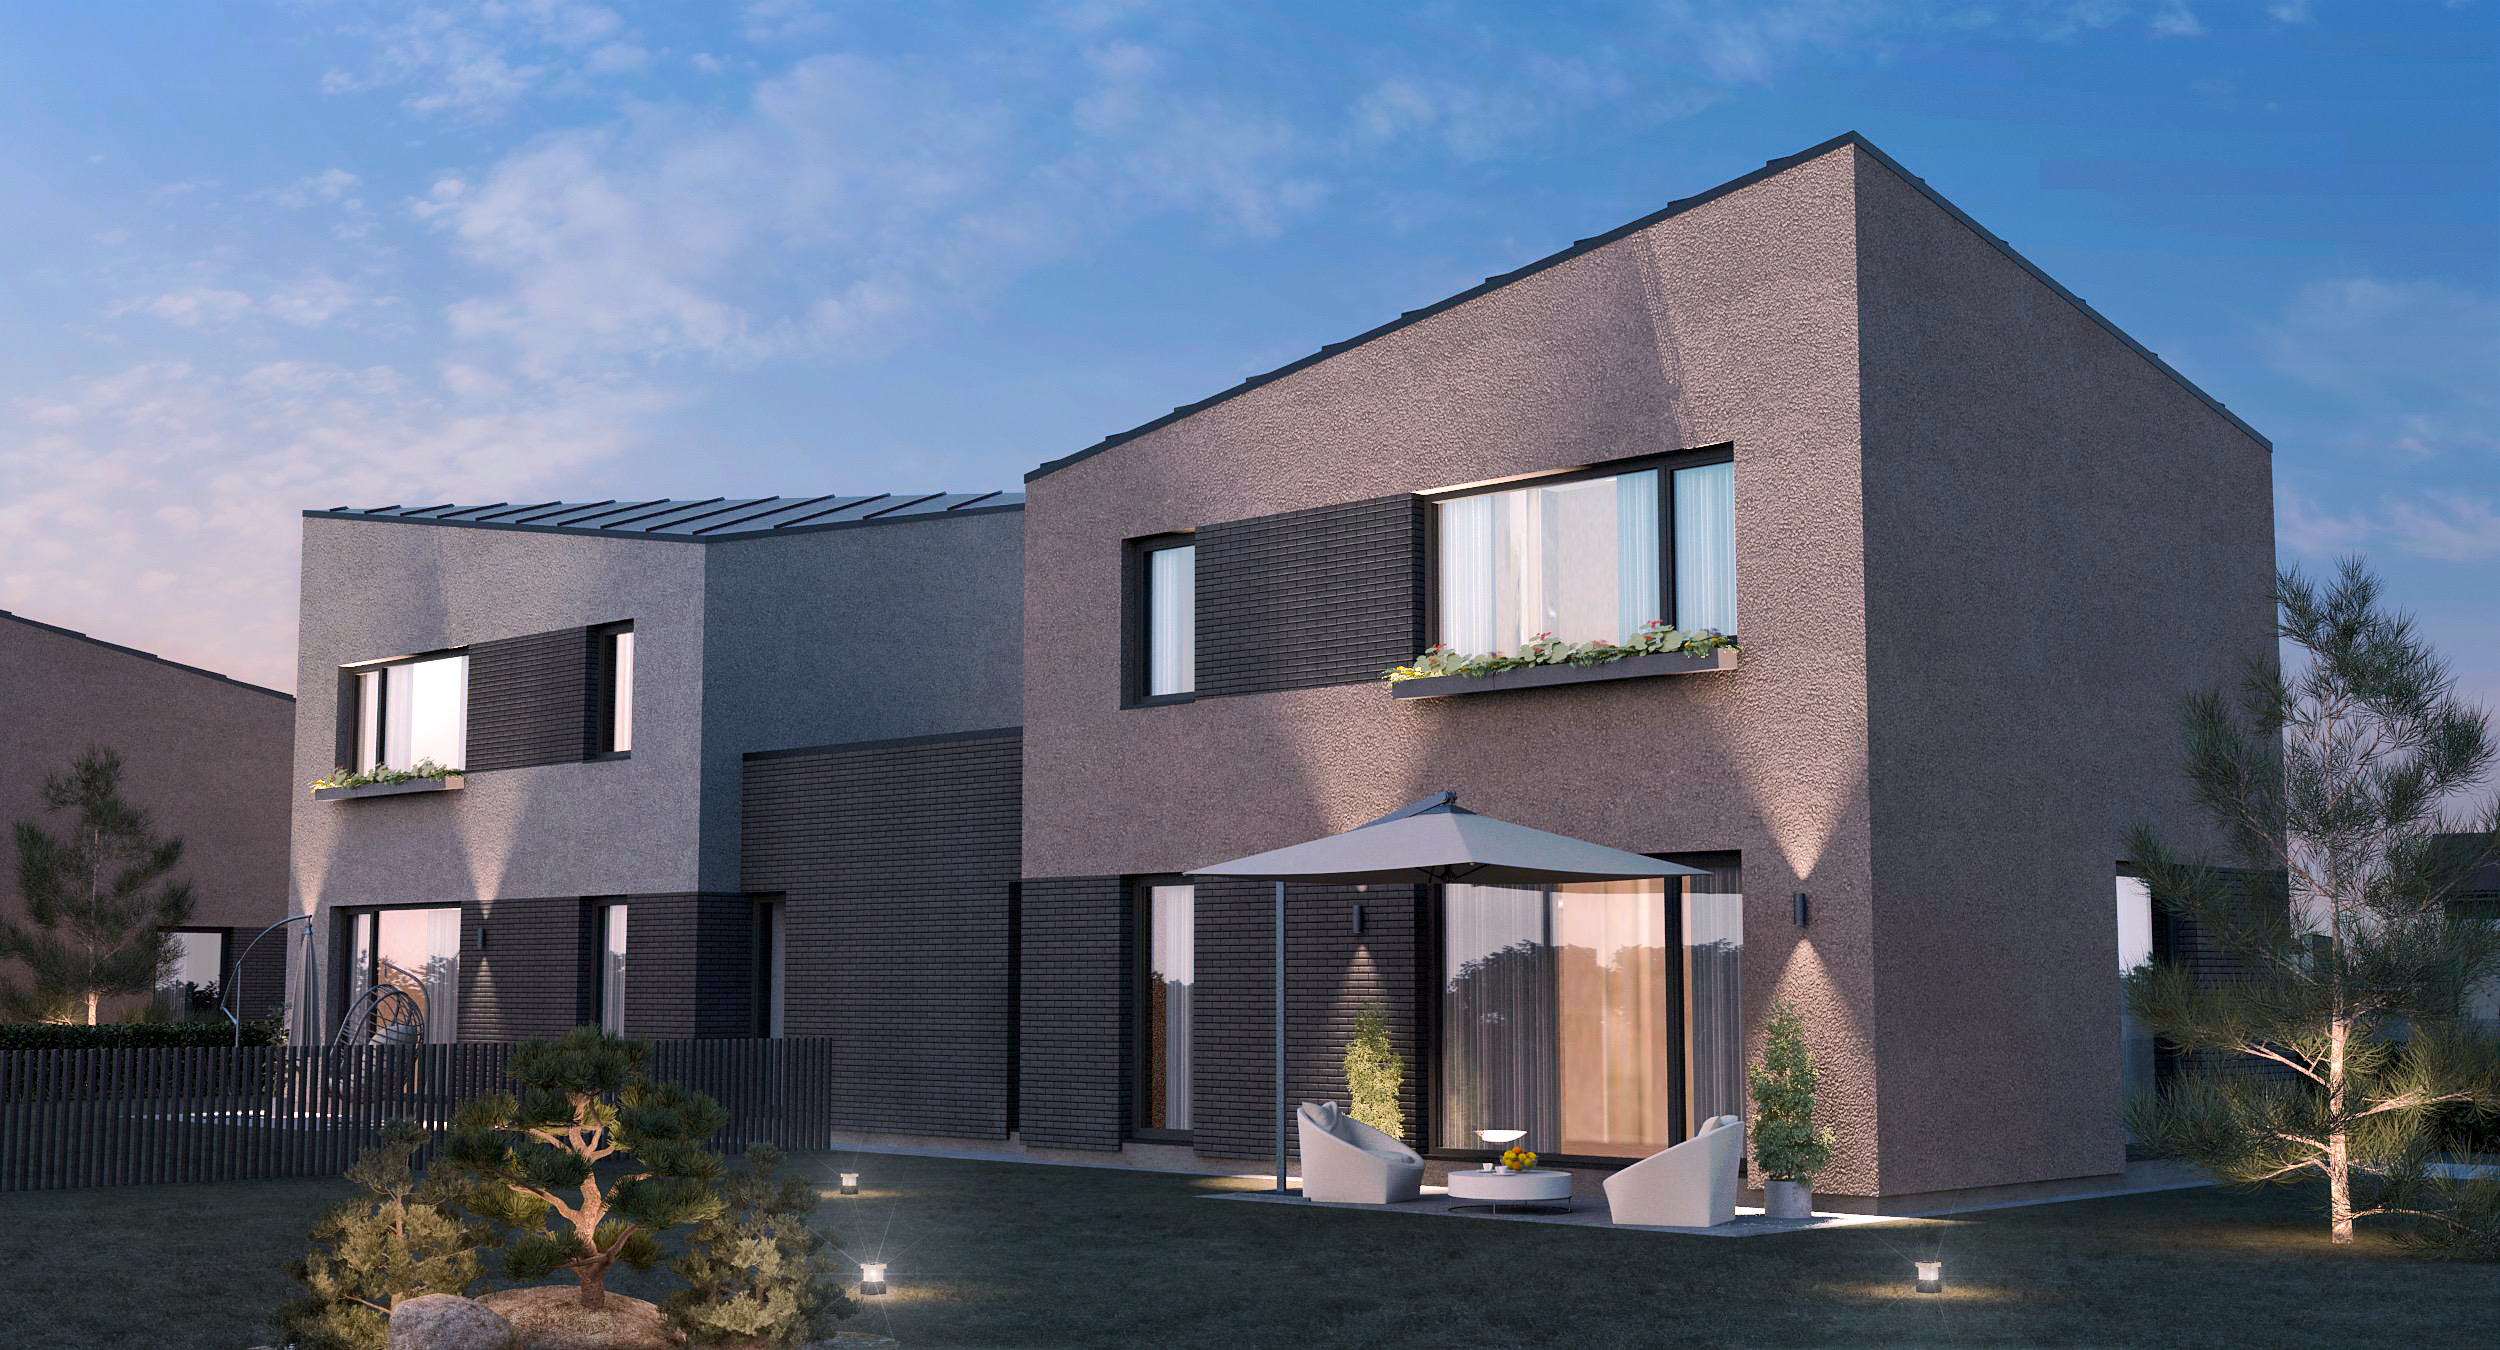 Parduodami du A + 129 m² namai su 4,5 arų žemės sklypais Ringauduose, Pilėnų g.